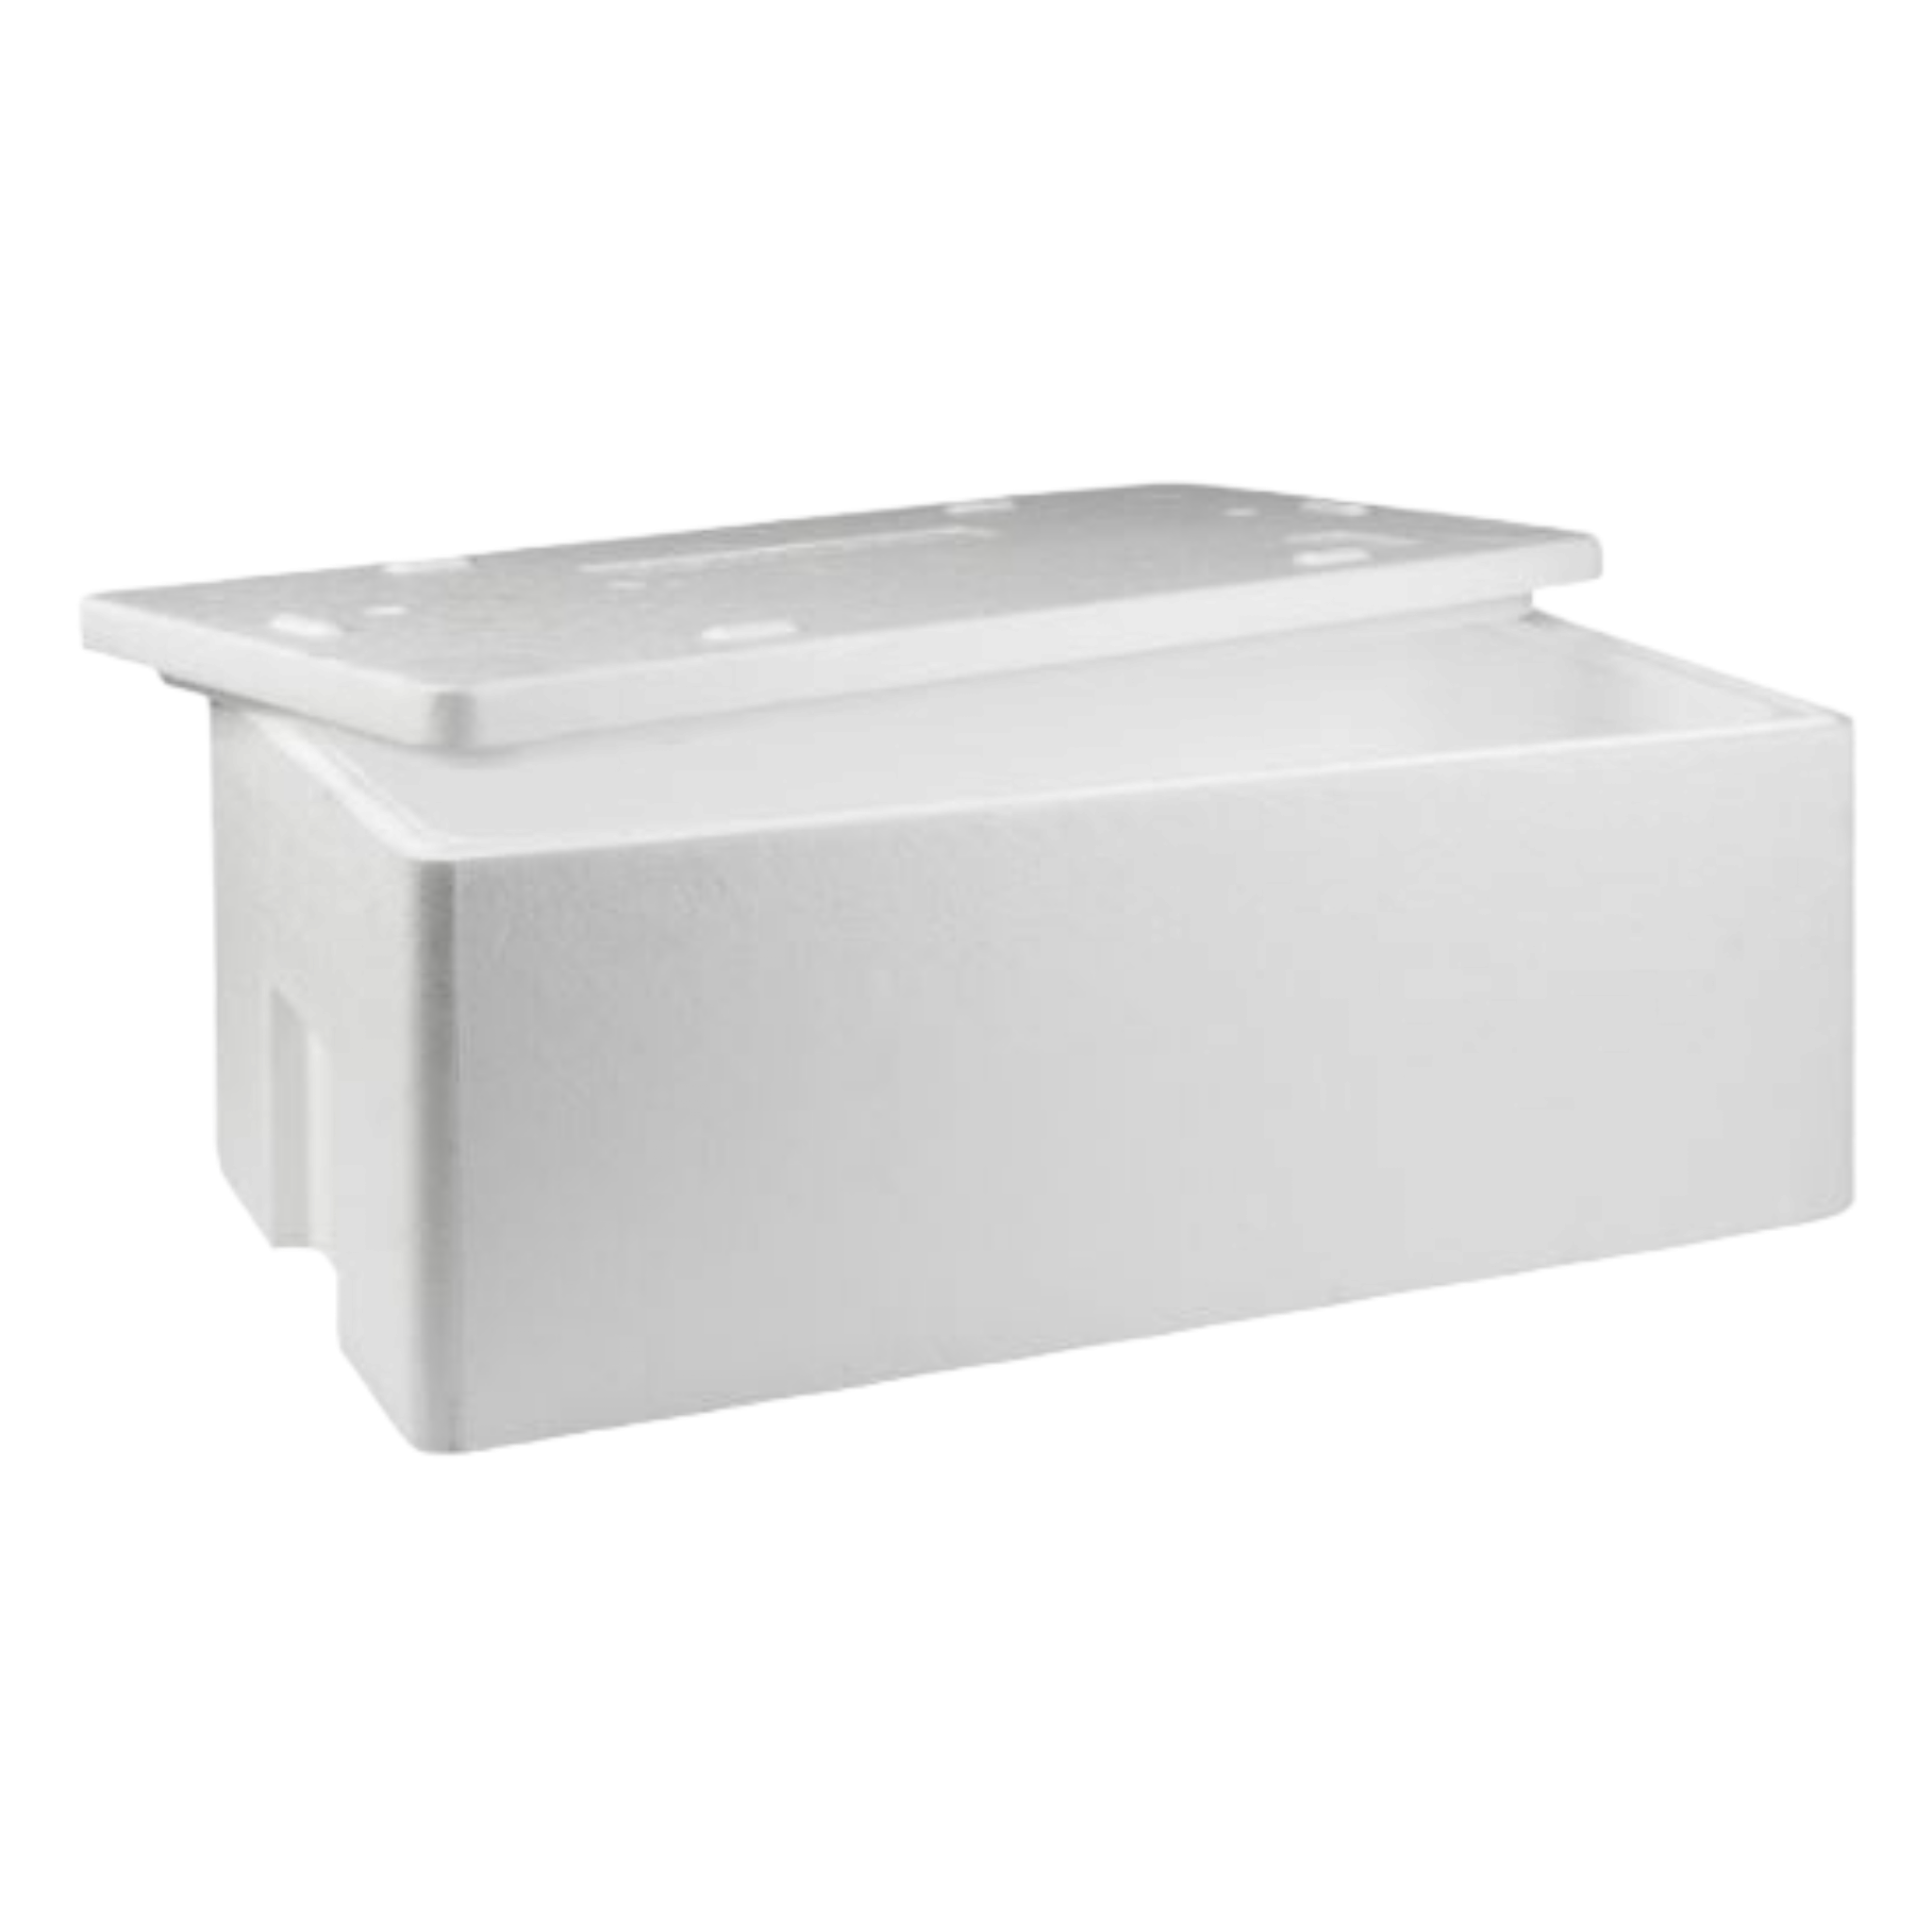 Polystyrene Cooler Box 20kg Thermal Storage Box